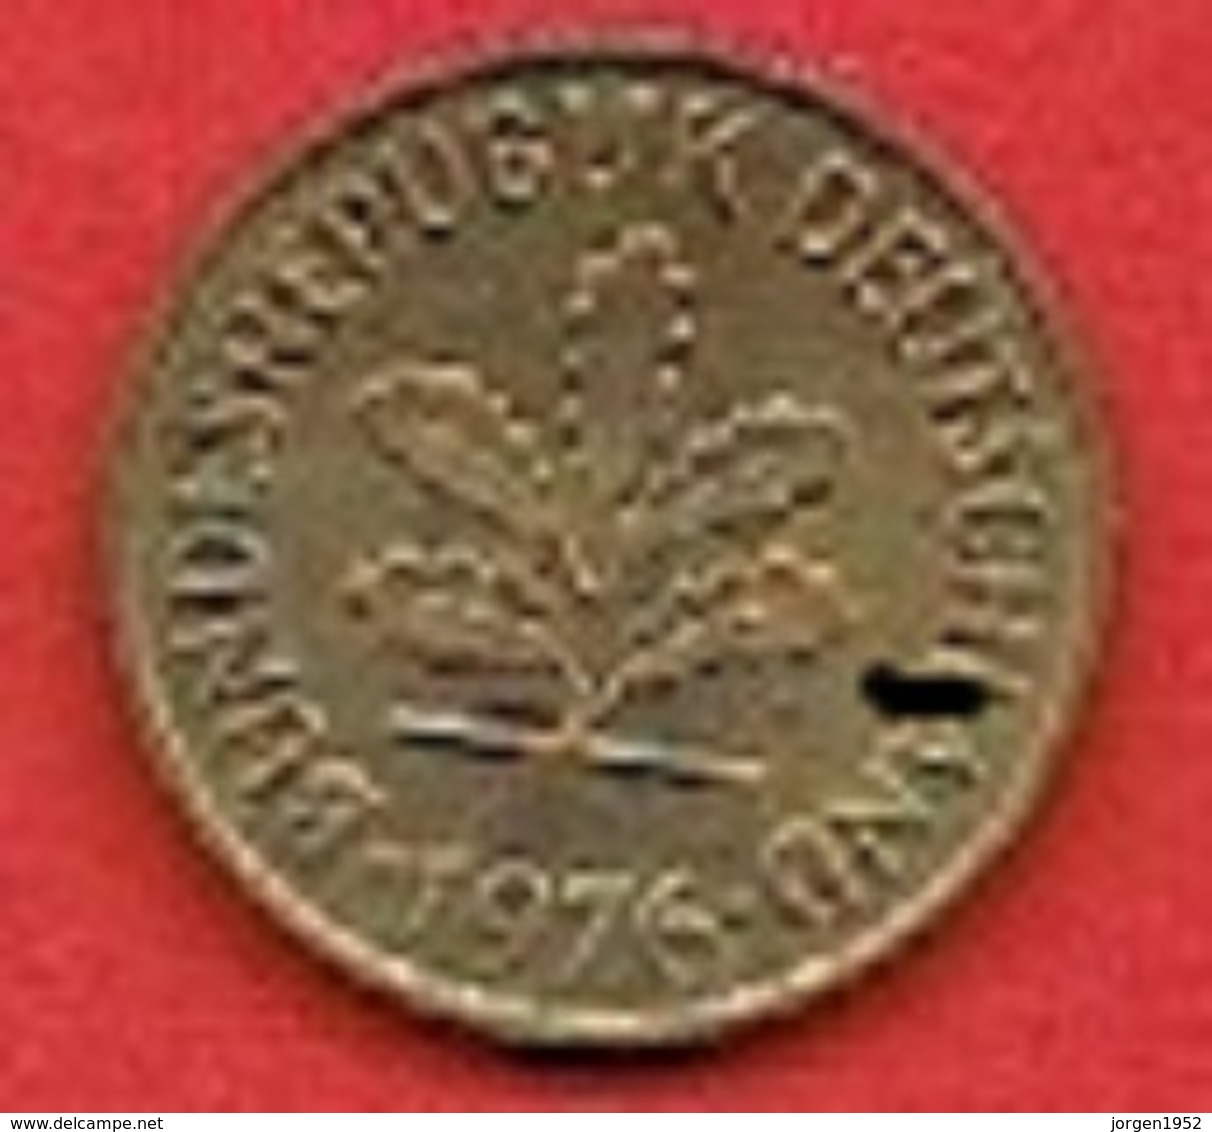 GERMANY #  5 PFENNING FROM 1976 - 5 Pfennig